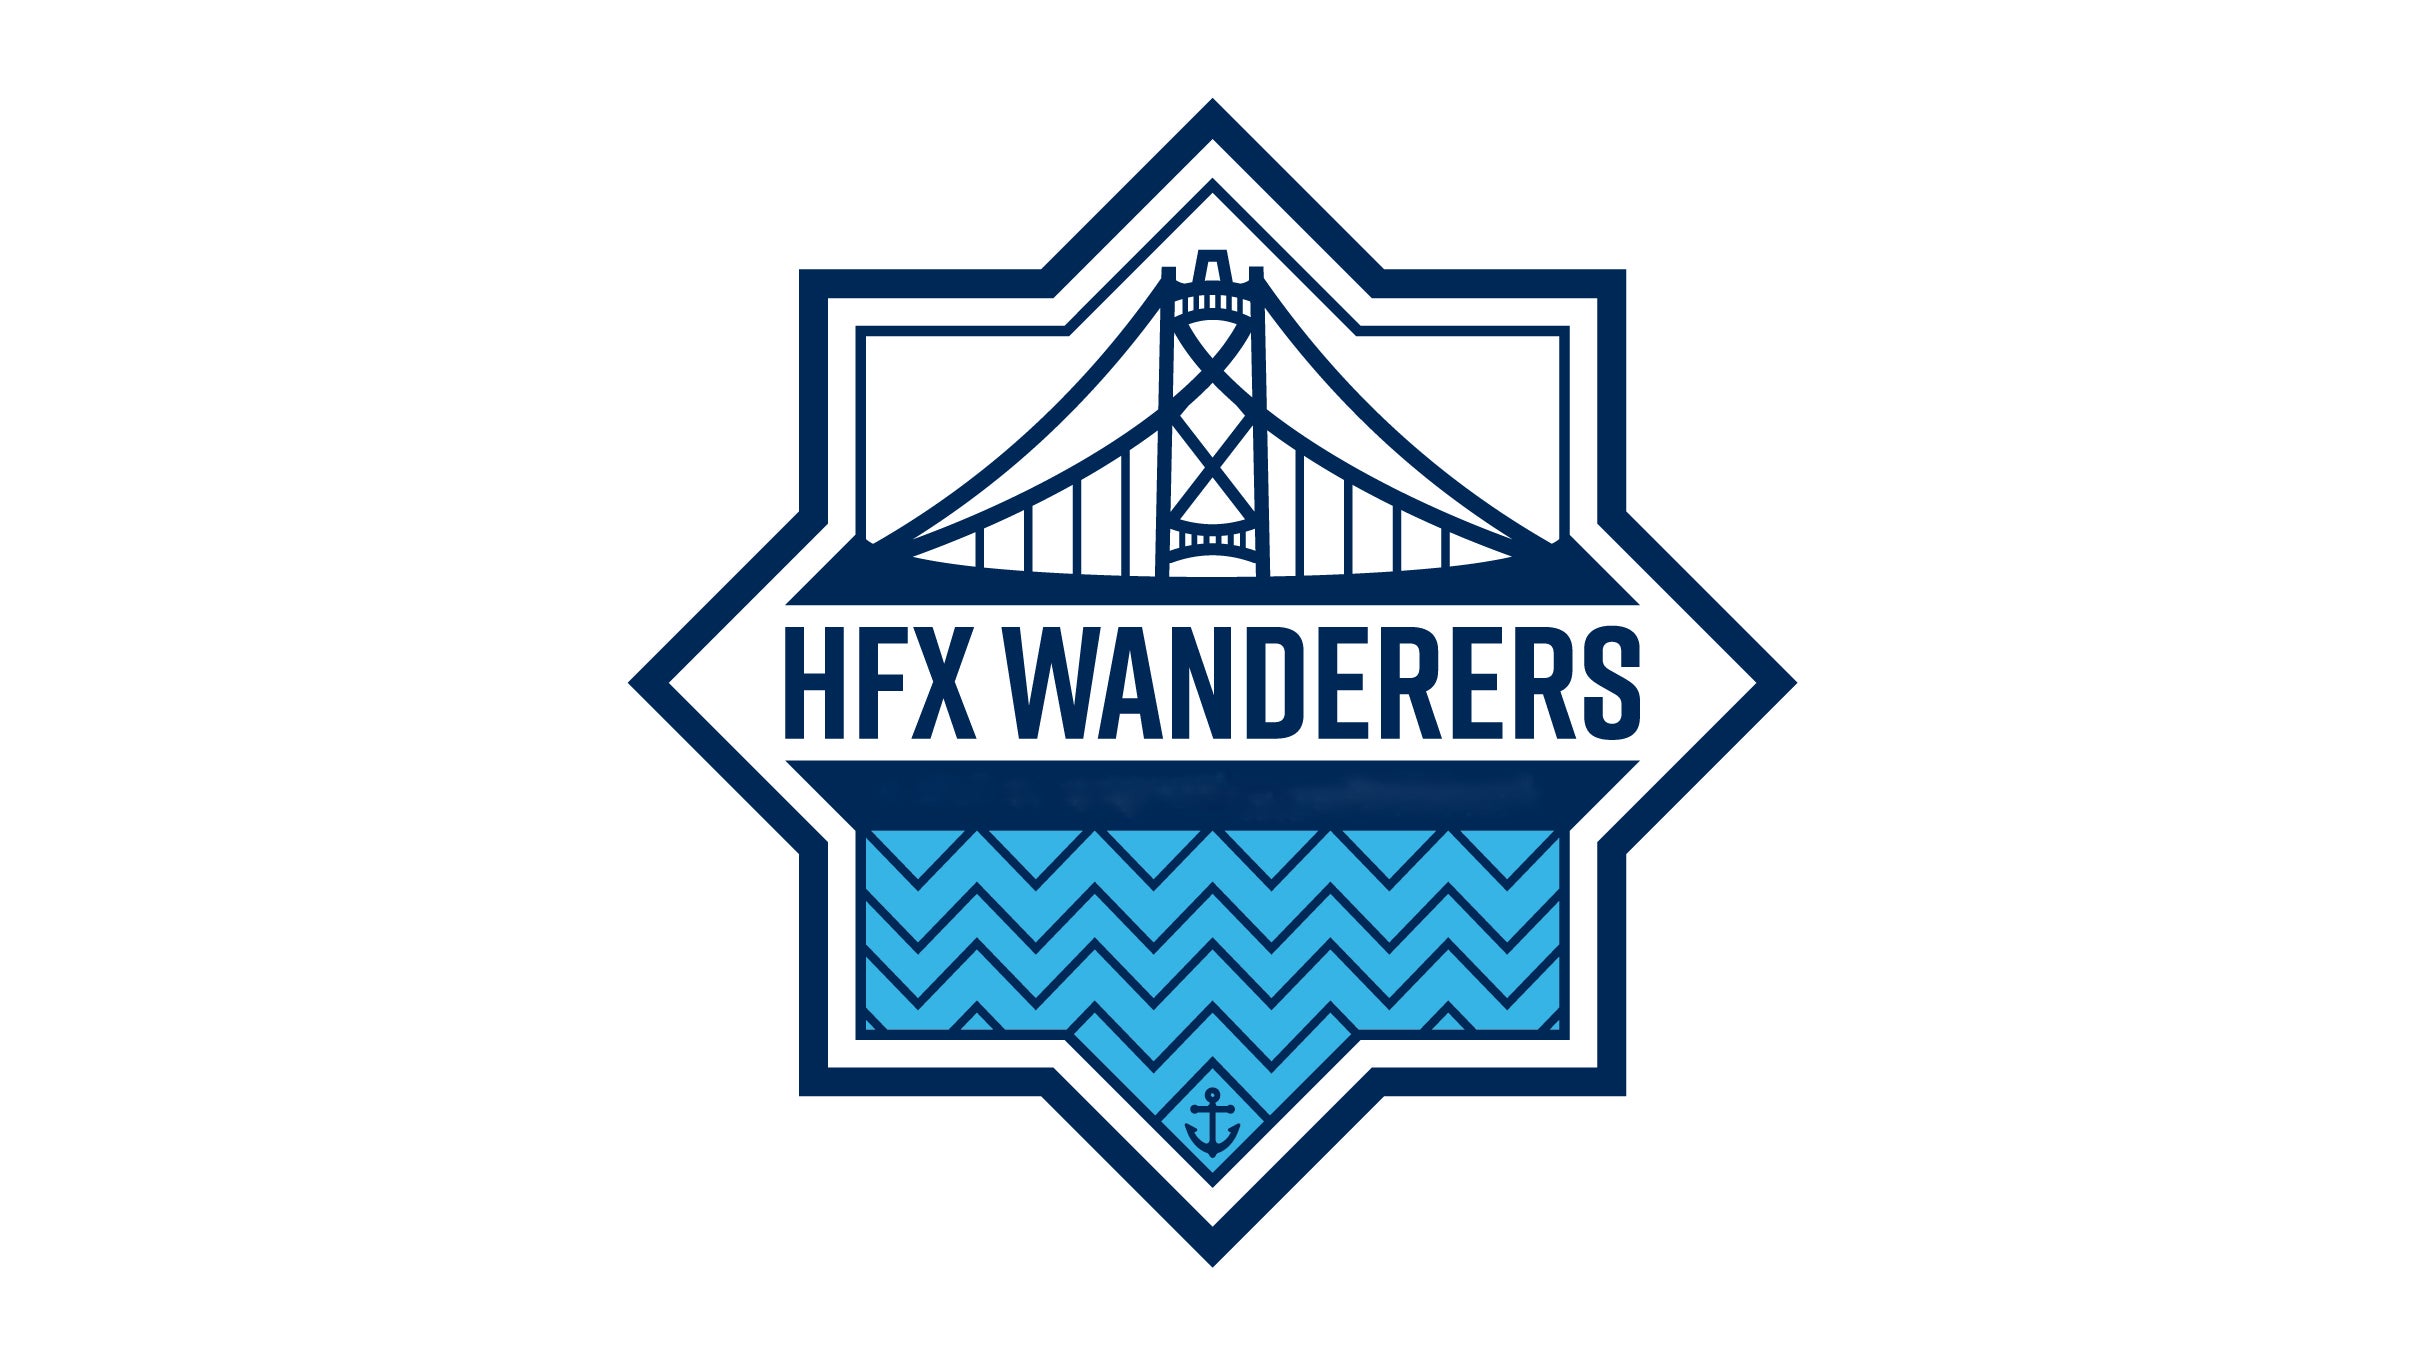 HFX Wanderers FC vs. Forge FC in Halifax promo photo for Westjet Rewards presale offer code